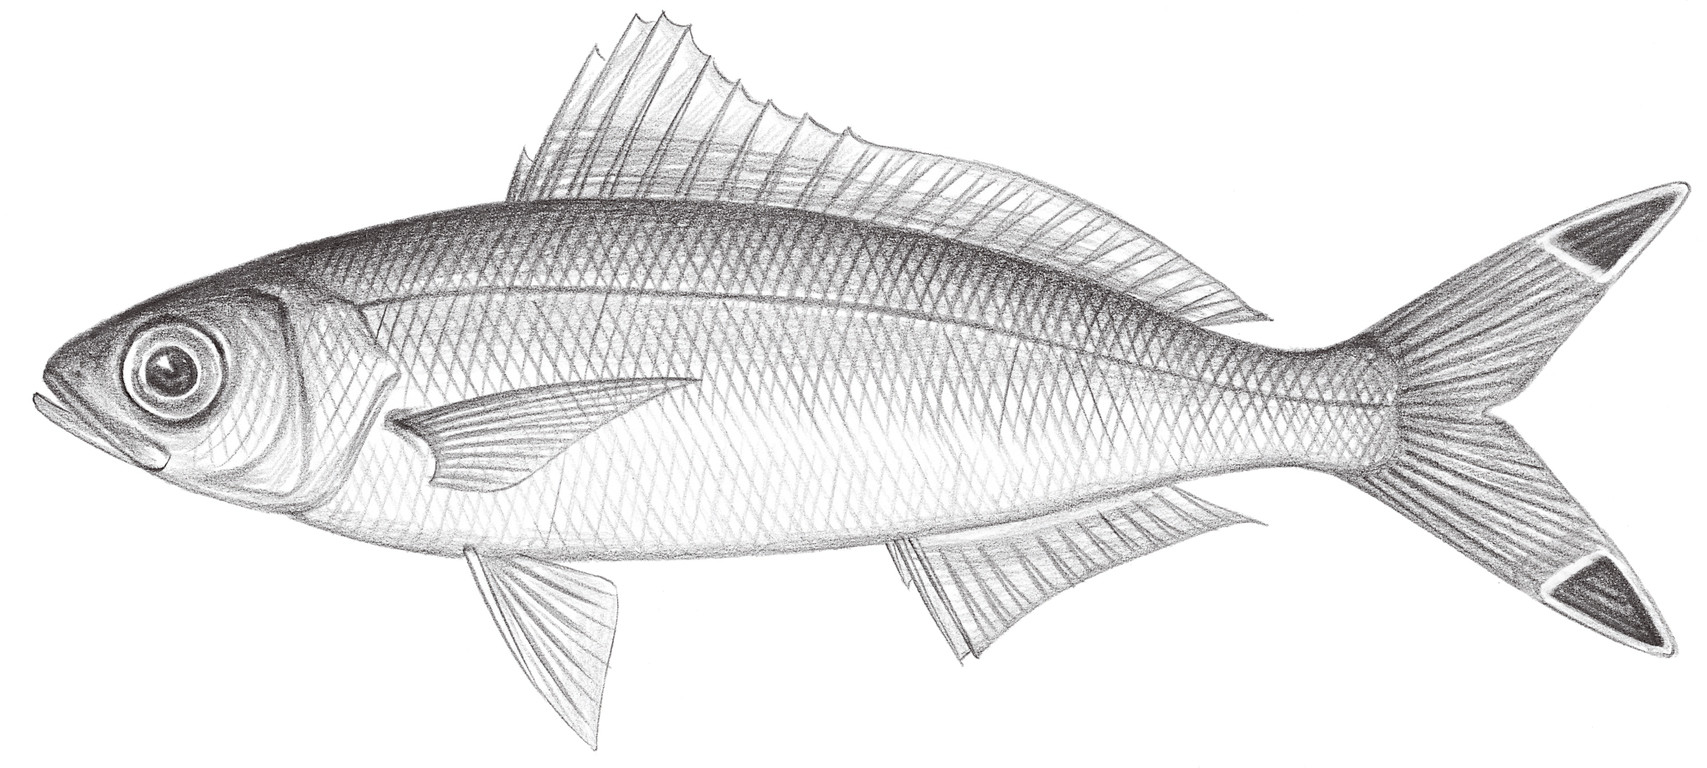 1368.	斑尾鰭梅鯛 Pterocaesio pisang (Bleeker, 1853)